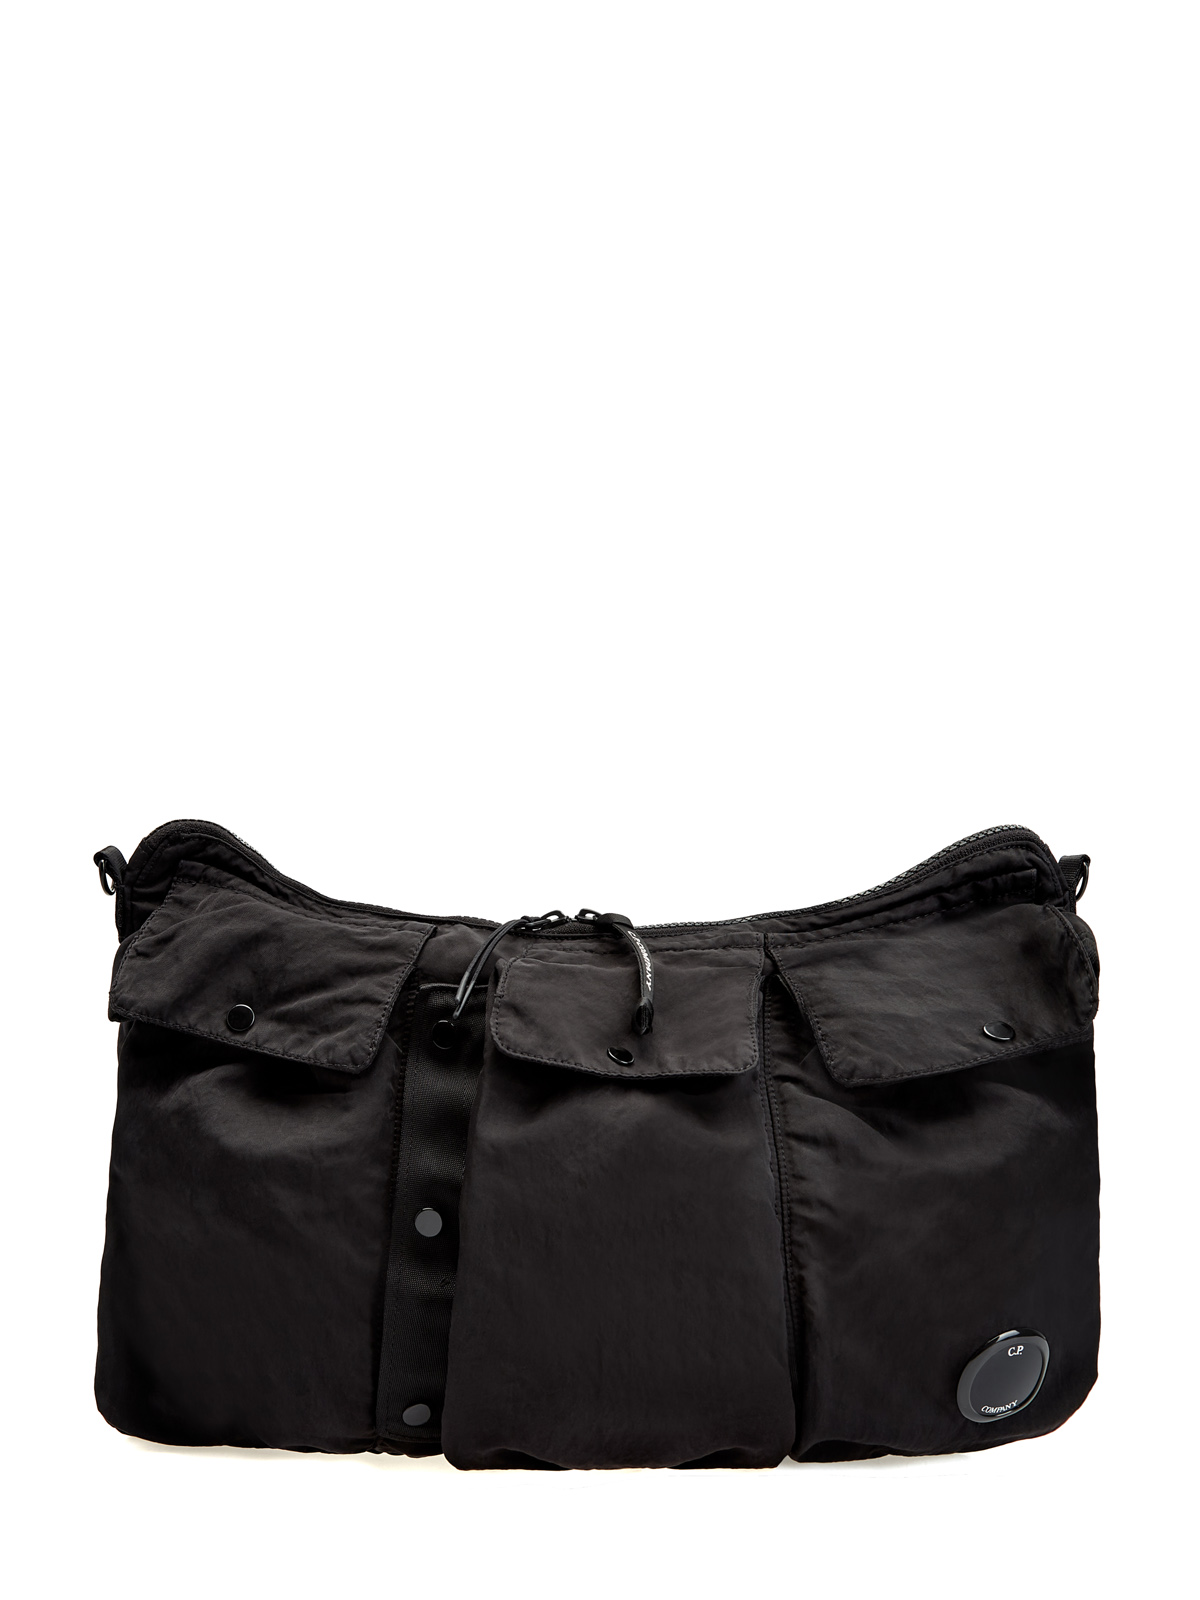 Вместительная сумка Nylon B Utility Pack с регулируемым ремнем